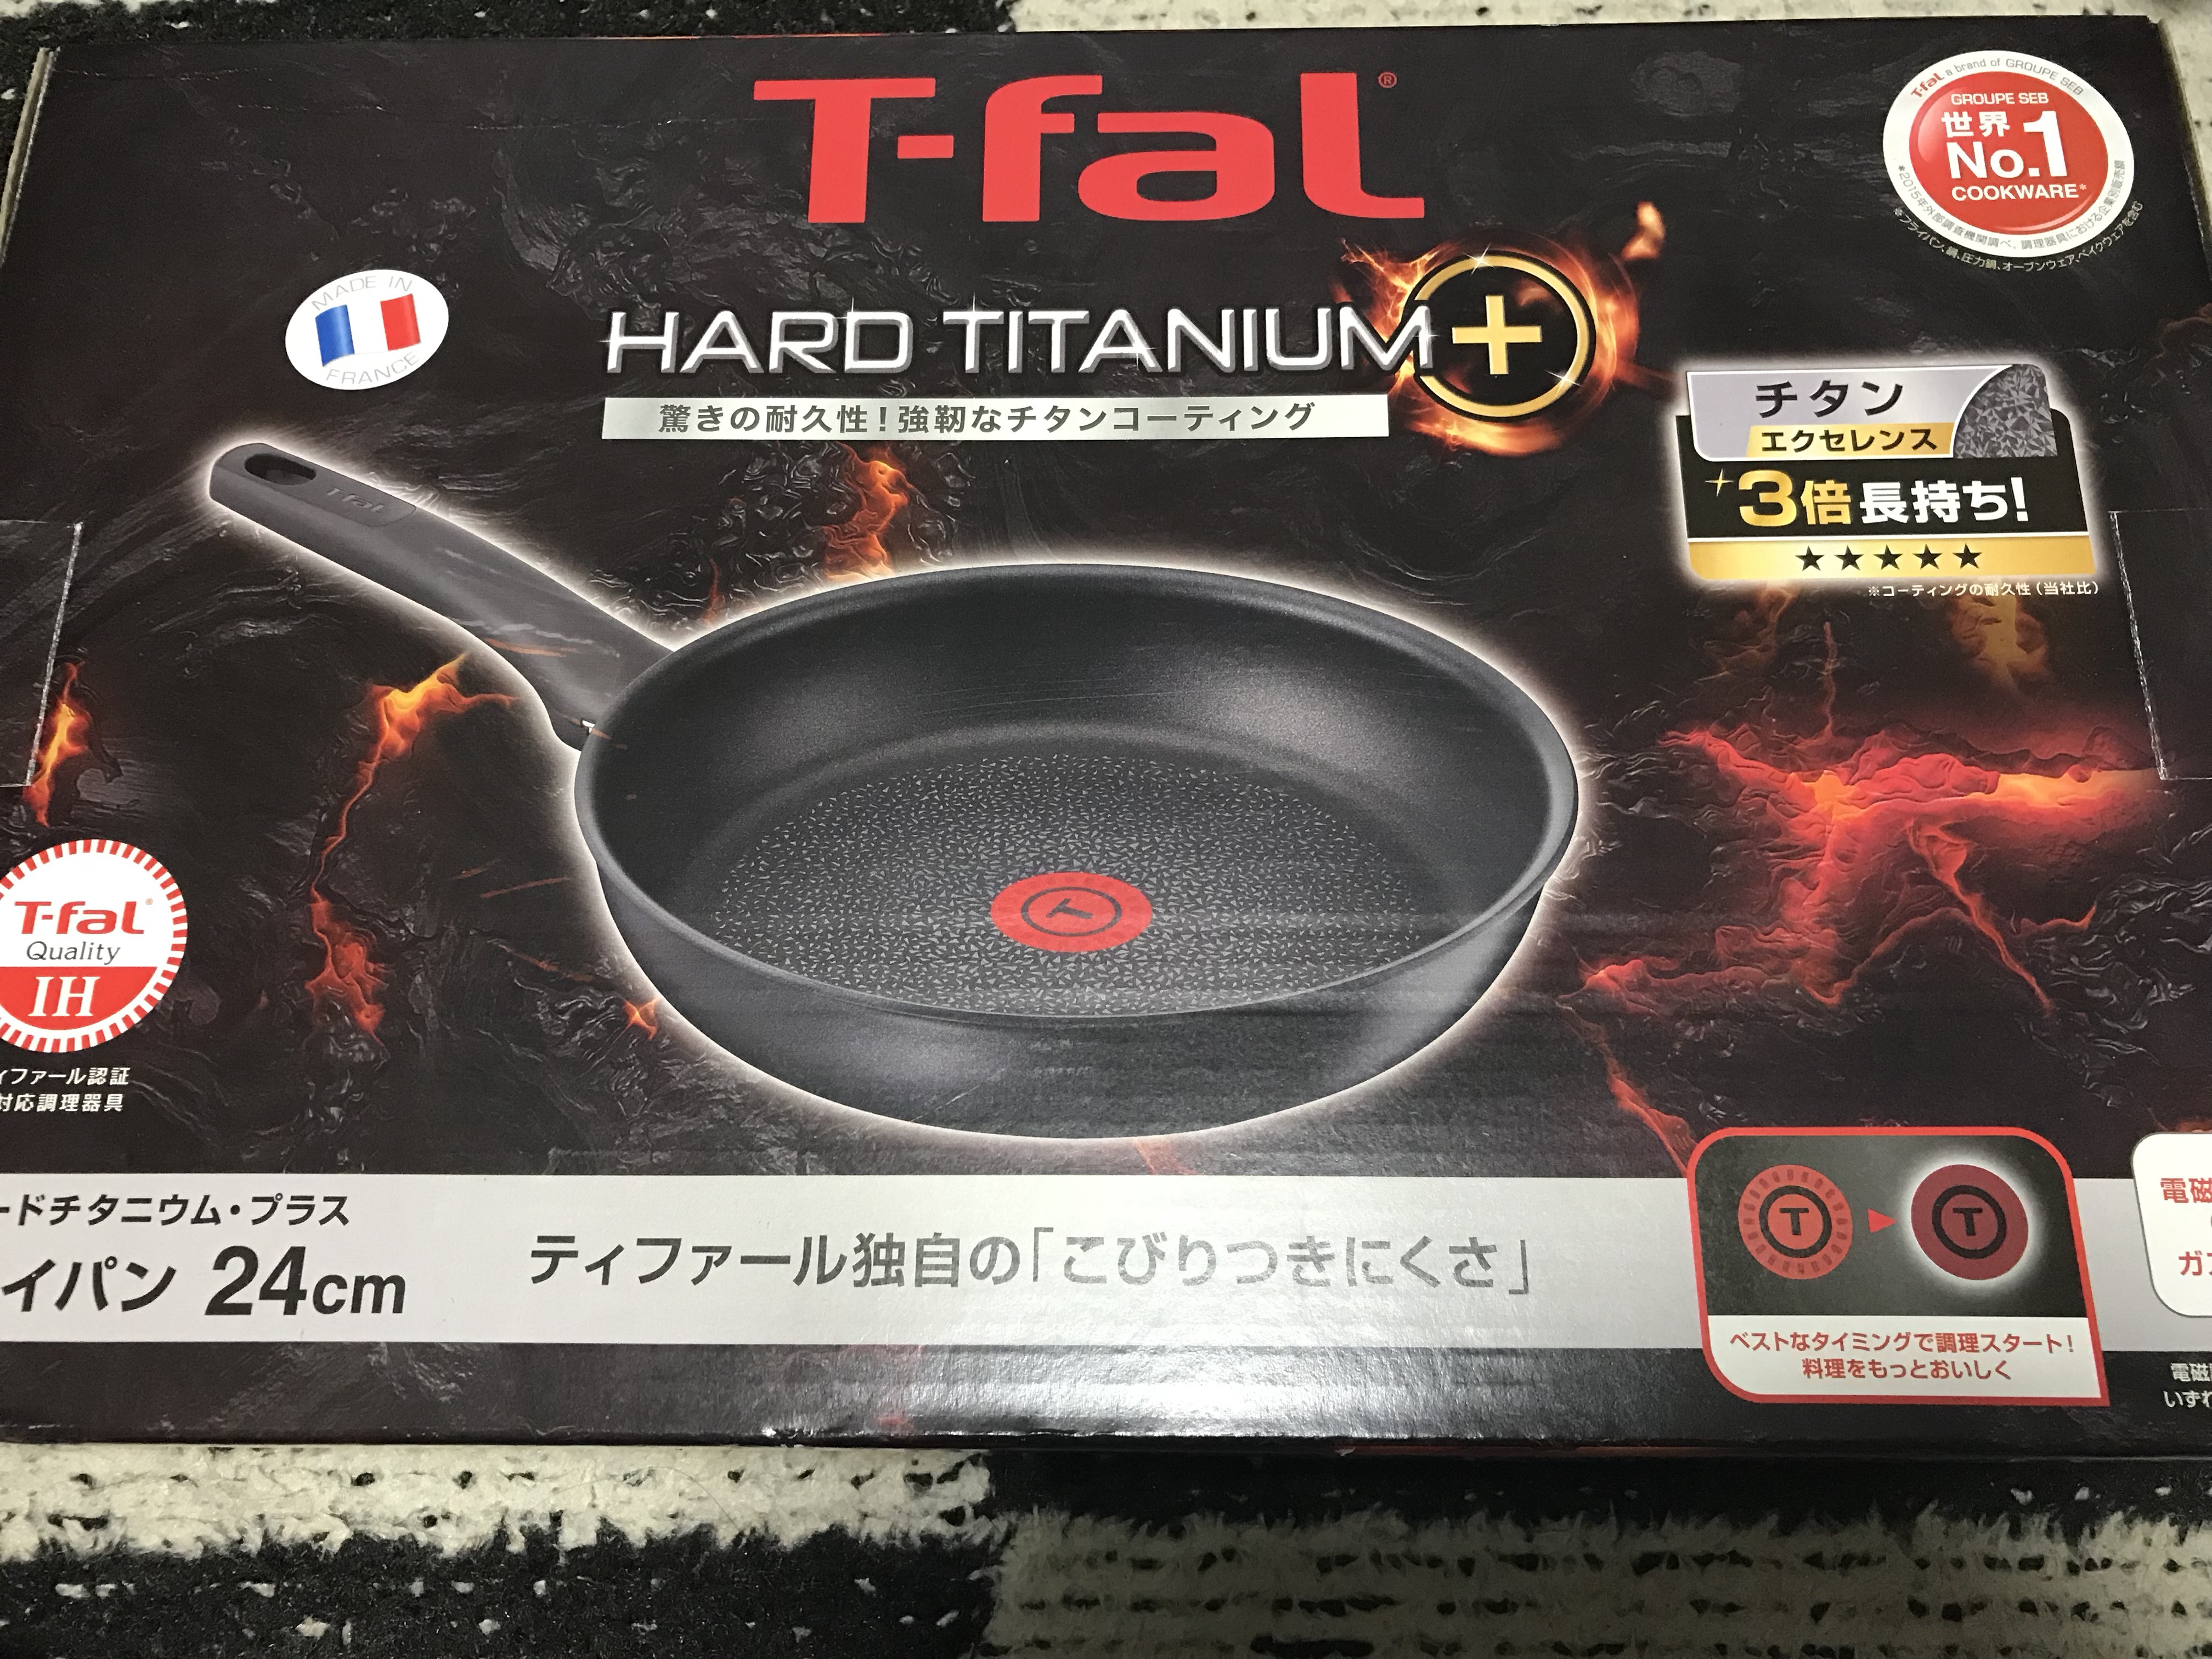 【ティファール】IHハードチタニウム・プラス フライパンのレビュー ひとり飯